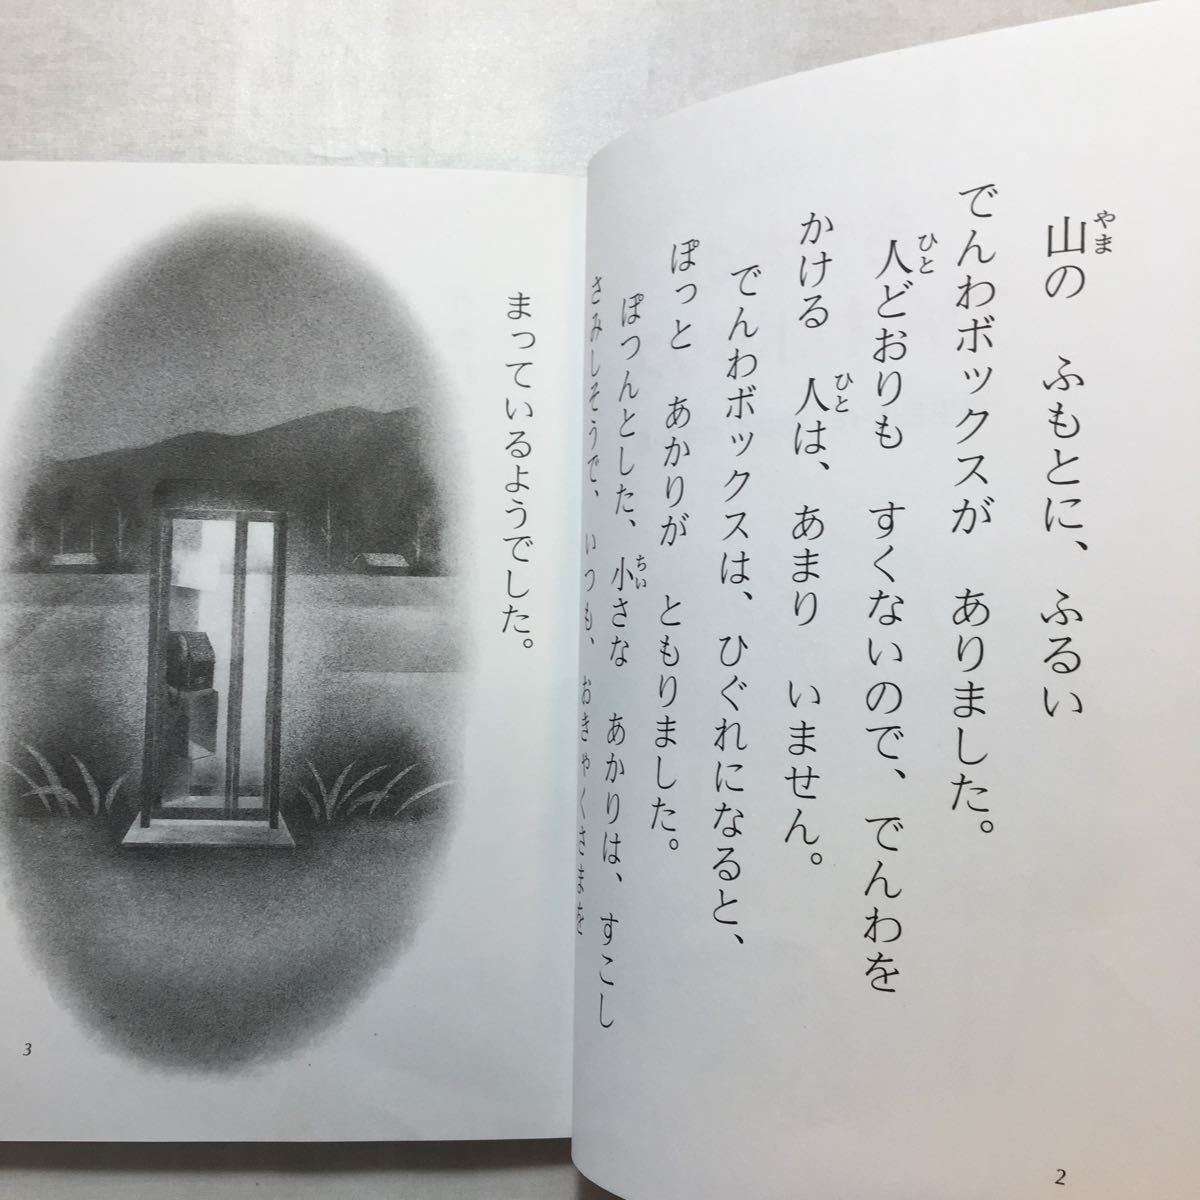 zaa-262♪きつねのでんわボックス 戸田 和代 (著), たかす かずみ (イラスト)　金の星社　1996年